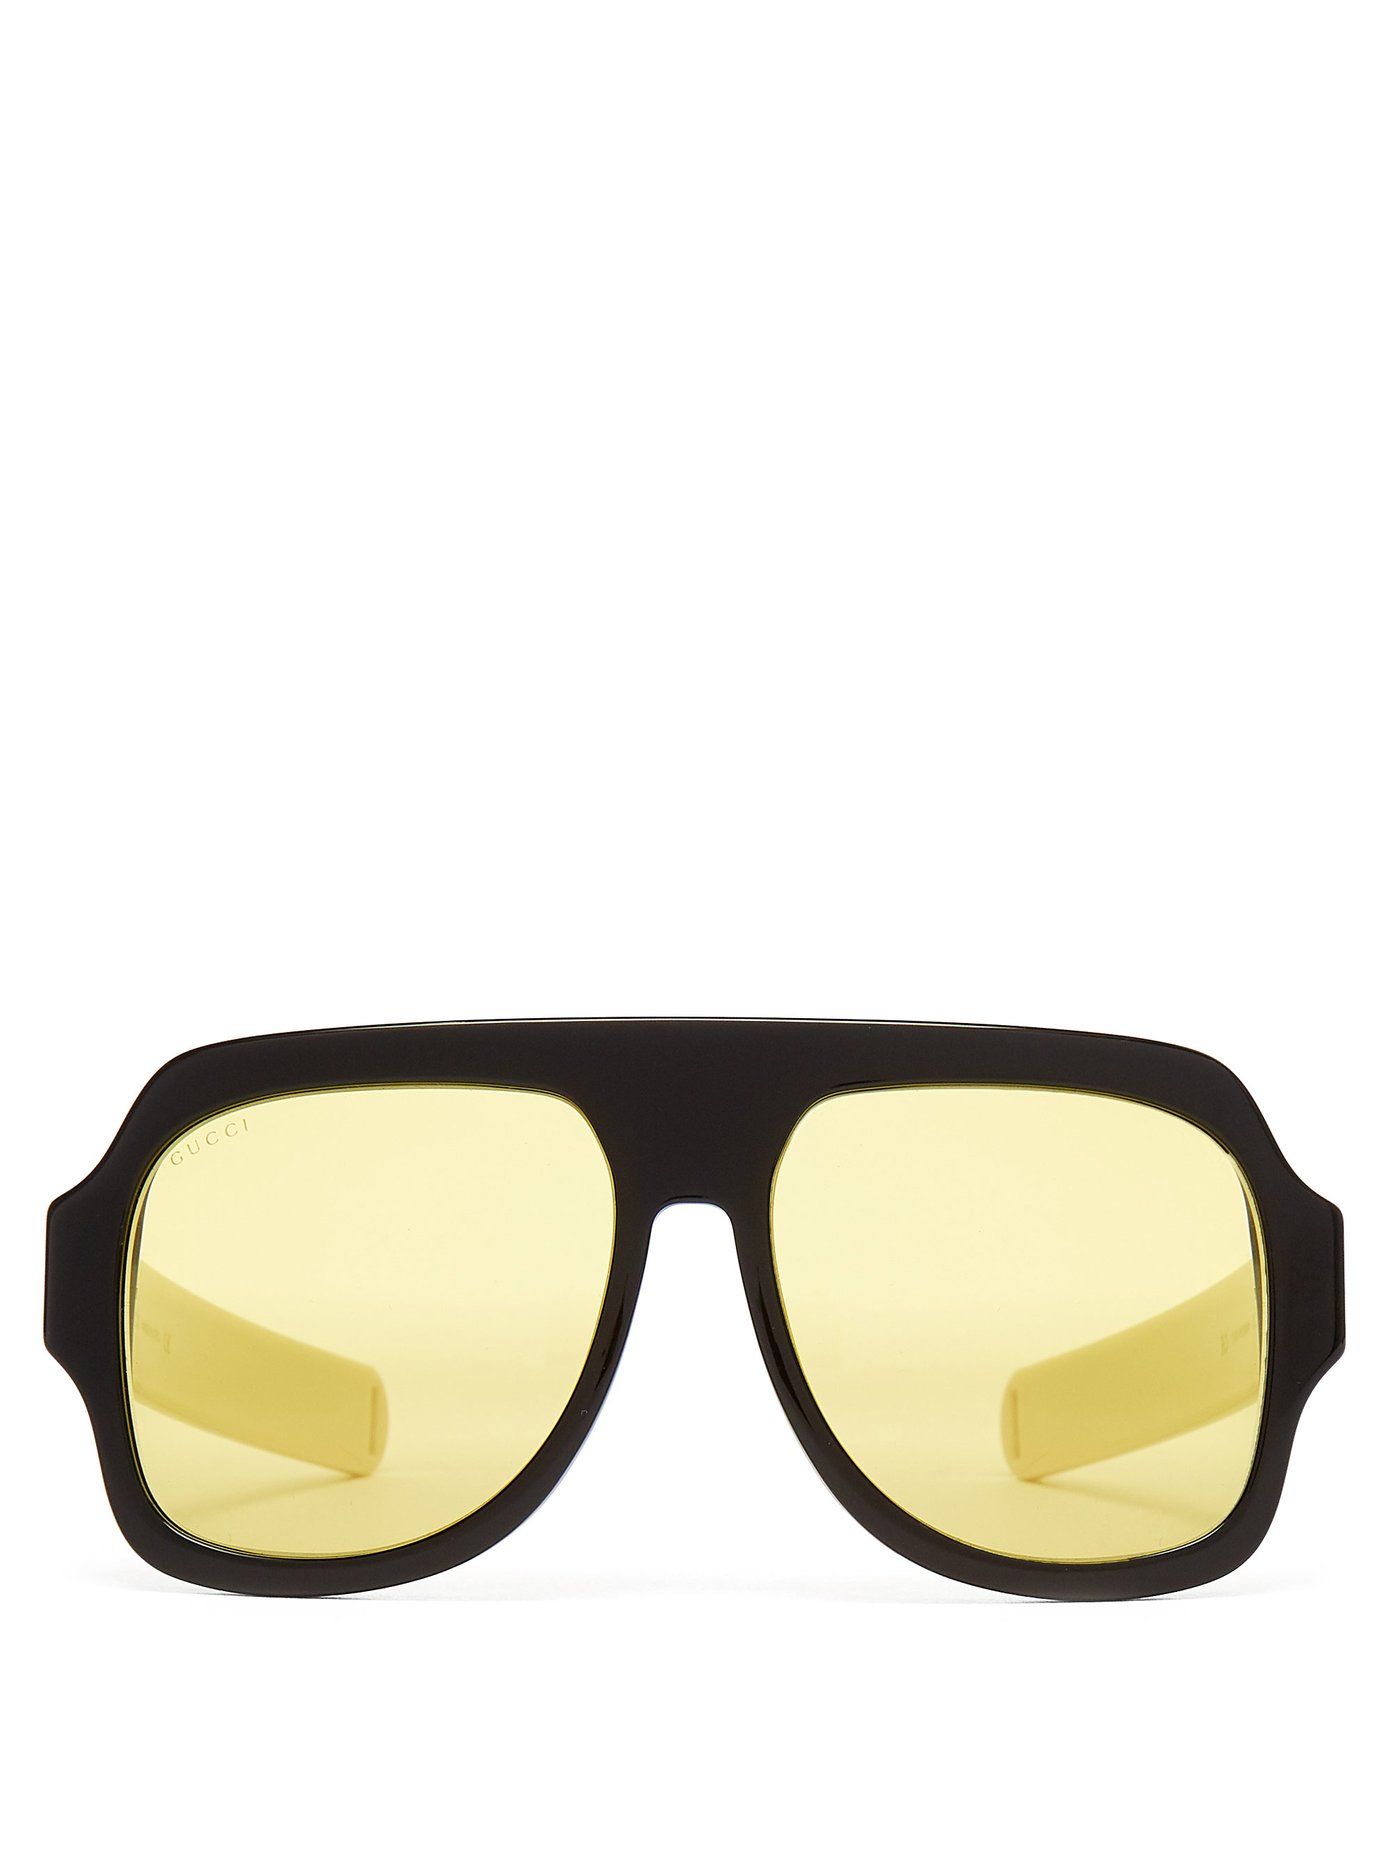 D-frame acetate sunglasses | Gucci 